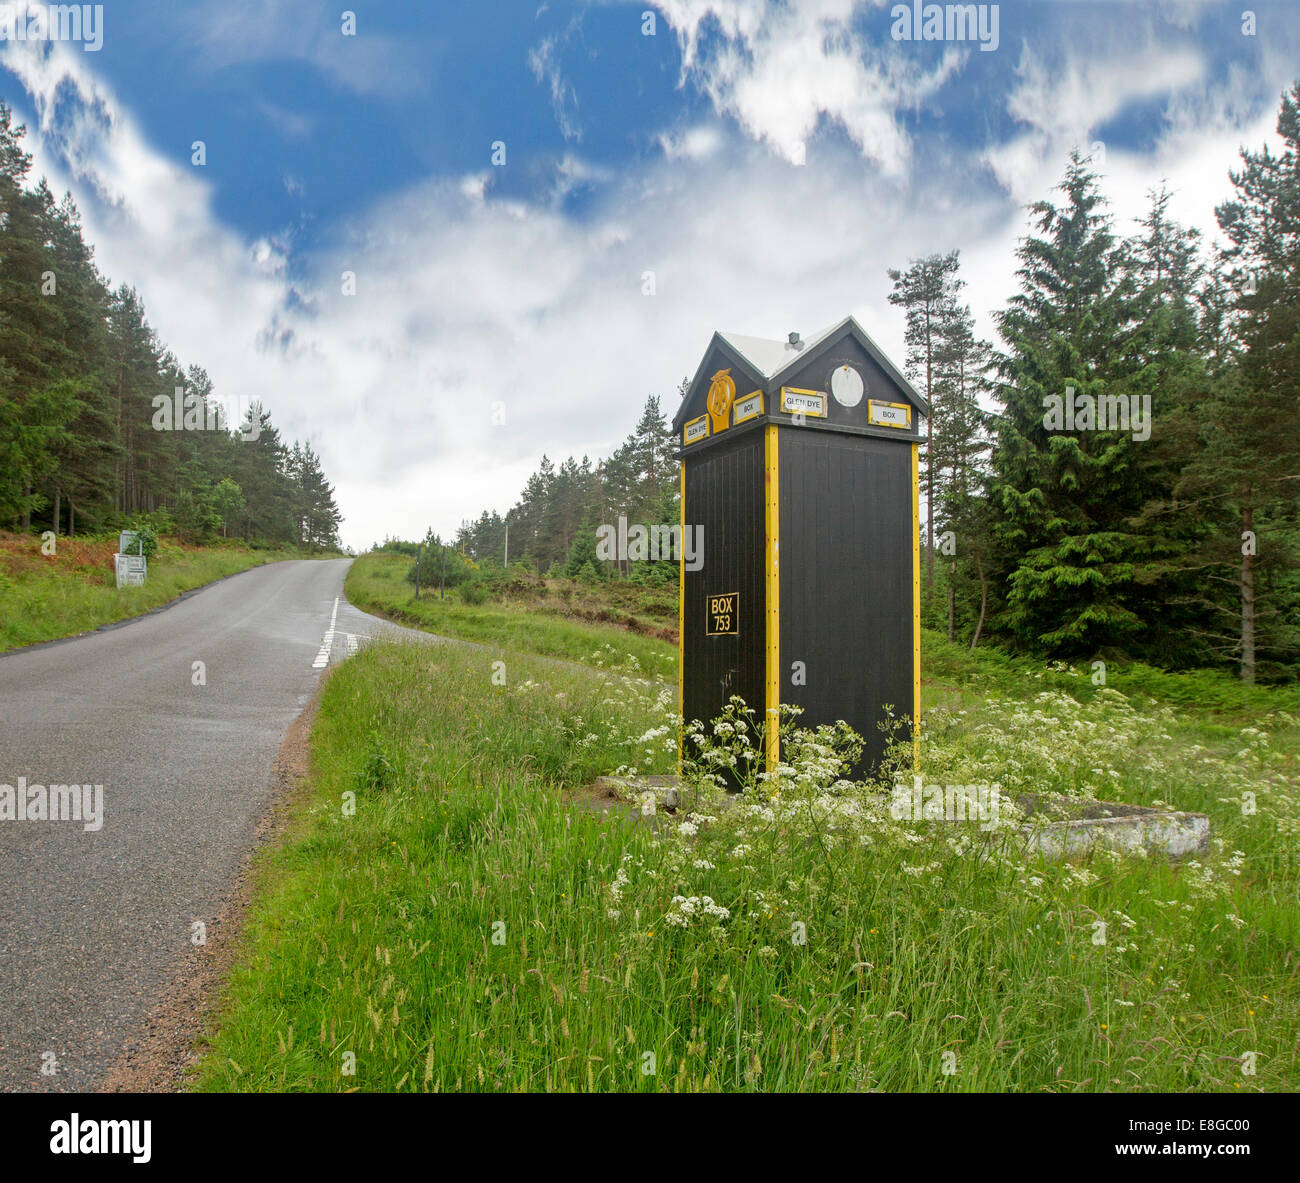 Denkmalgeschützte britischen Automobilclub (AA) Telefonzelle an isolierten Straßenkreuzung am Glen Dye im schottischen Hochland Stockfoto